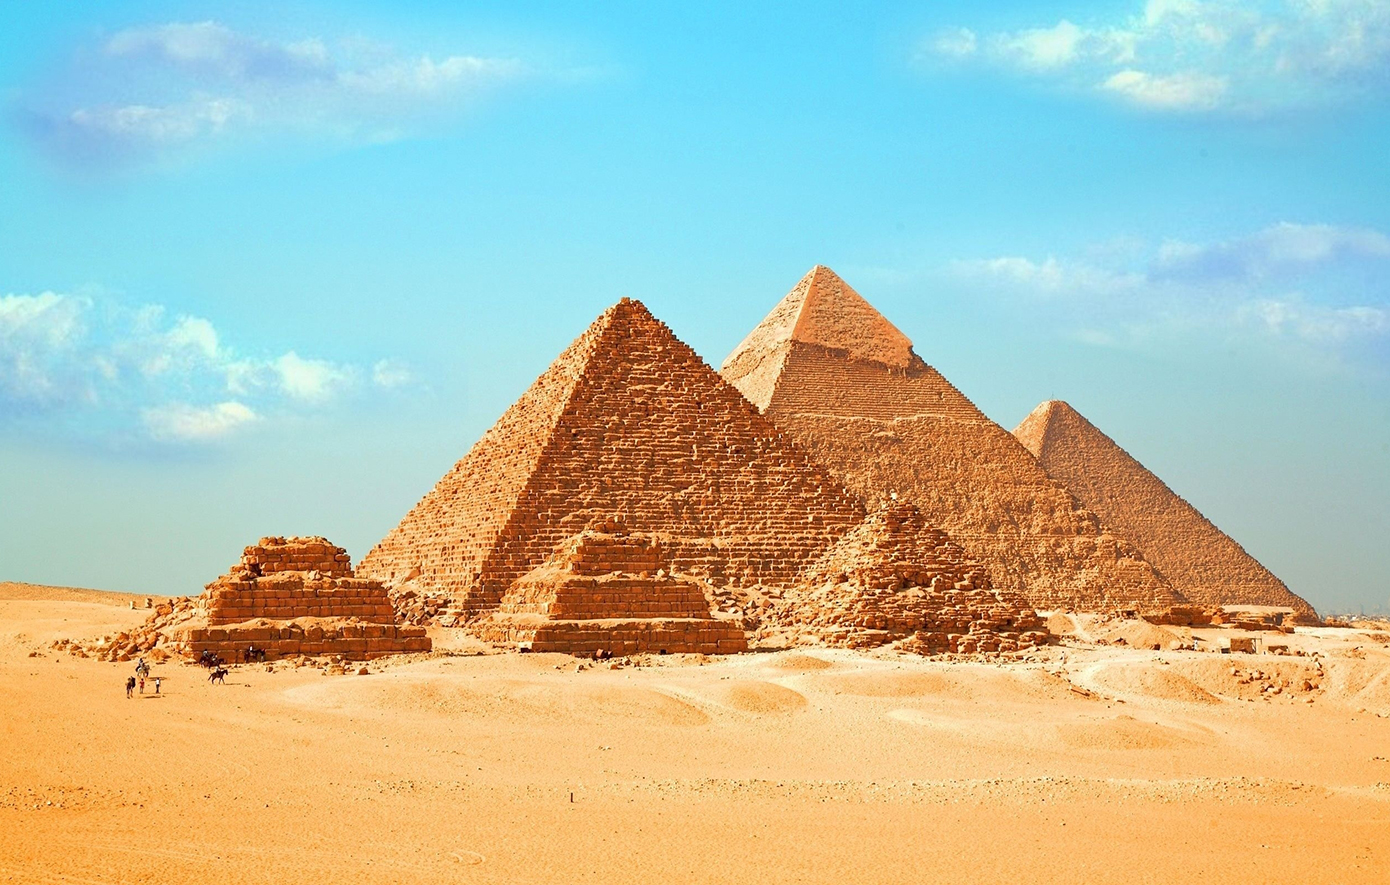 Ανασκαφή μπορεί να έλυσε το μυστήριο για το χτίσιμο των πυραμίδων της Αιγύπτου